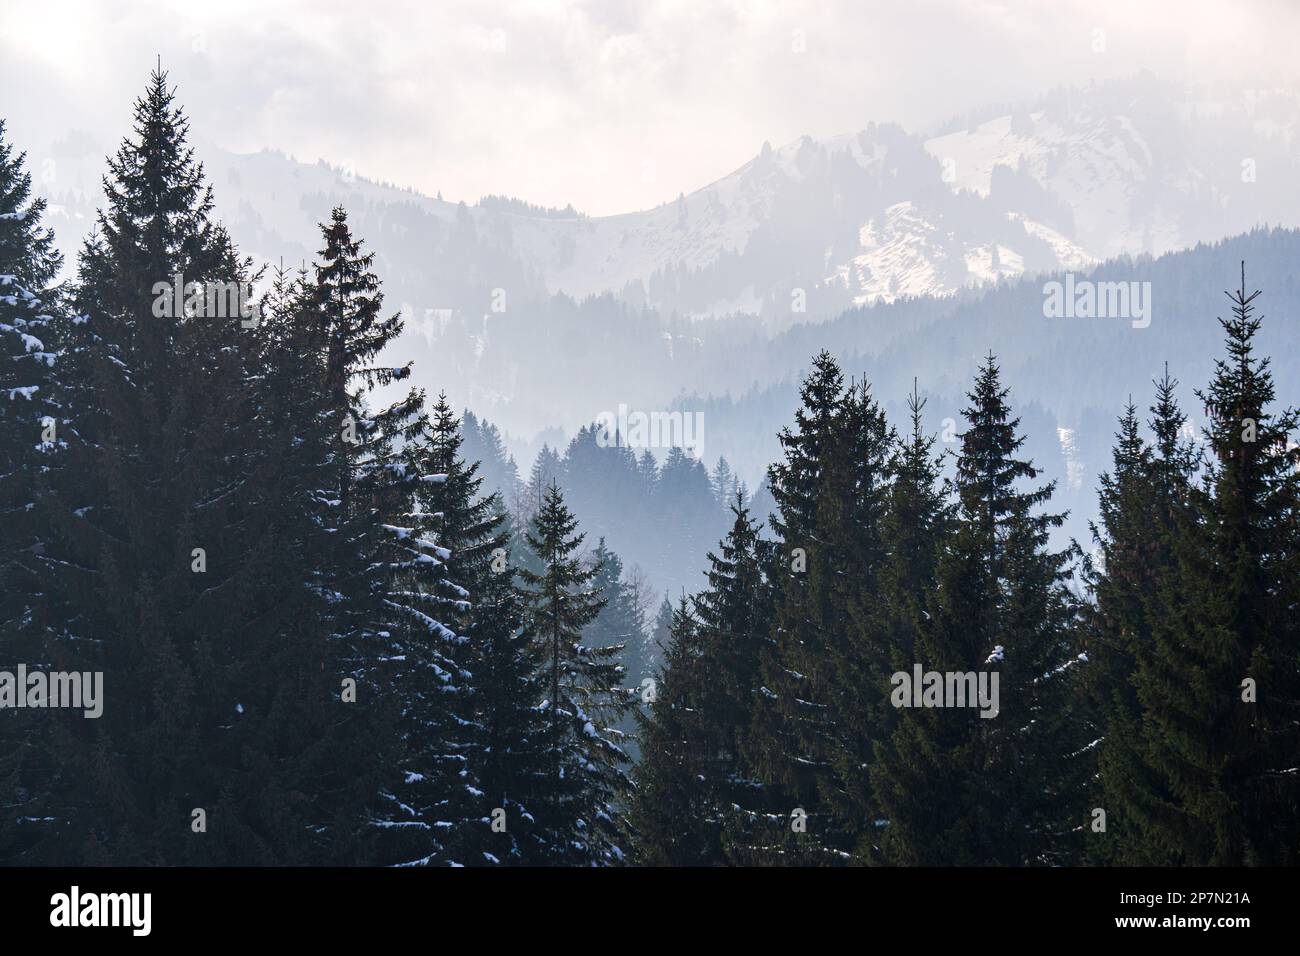 Bewaldete Berghänge und Bergkämme mit Schnee und tiefliegendem Tallnebel mit Silhouetten immergrüner Nadelbäume umhüllt von Nebel. Landschaftlich reizvolles schneegebiet Stockfoto